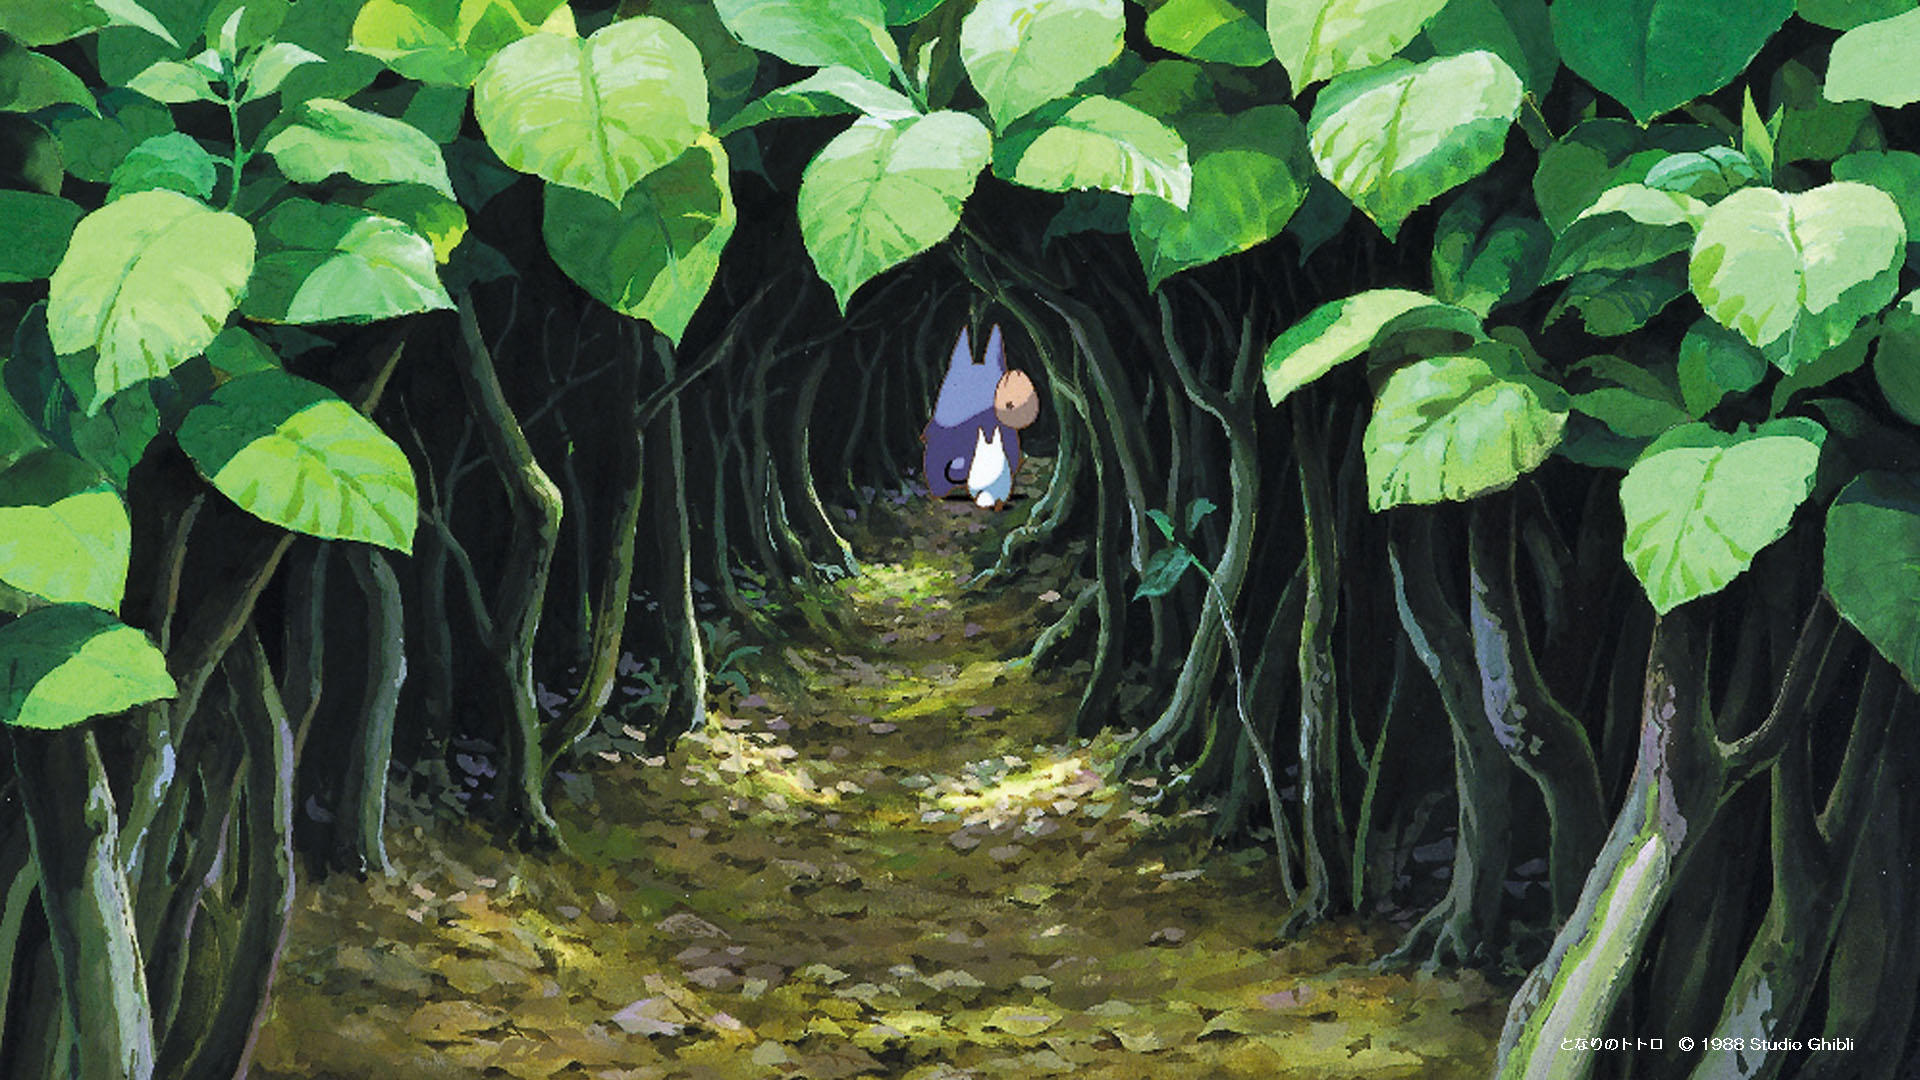 Studio Ghibli Aesthetic Wallpapers  Wallpaper Cave